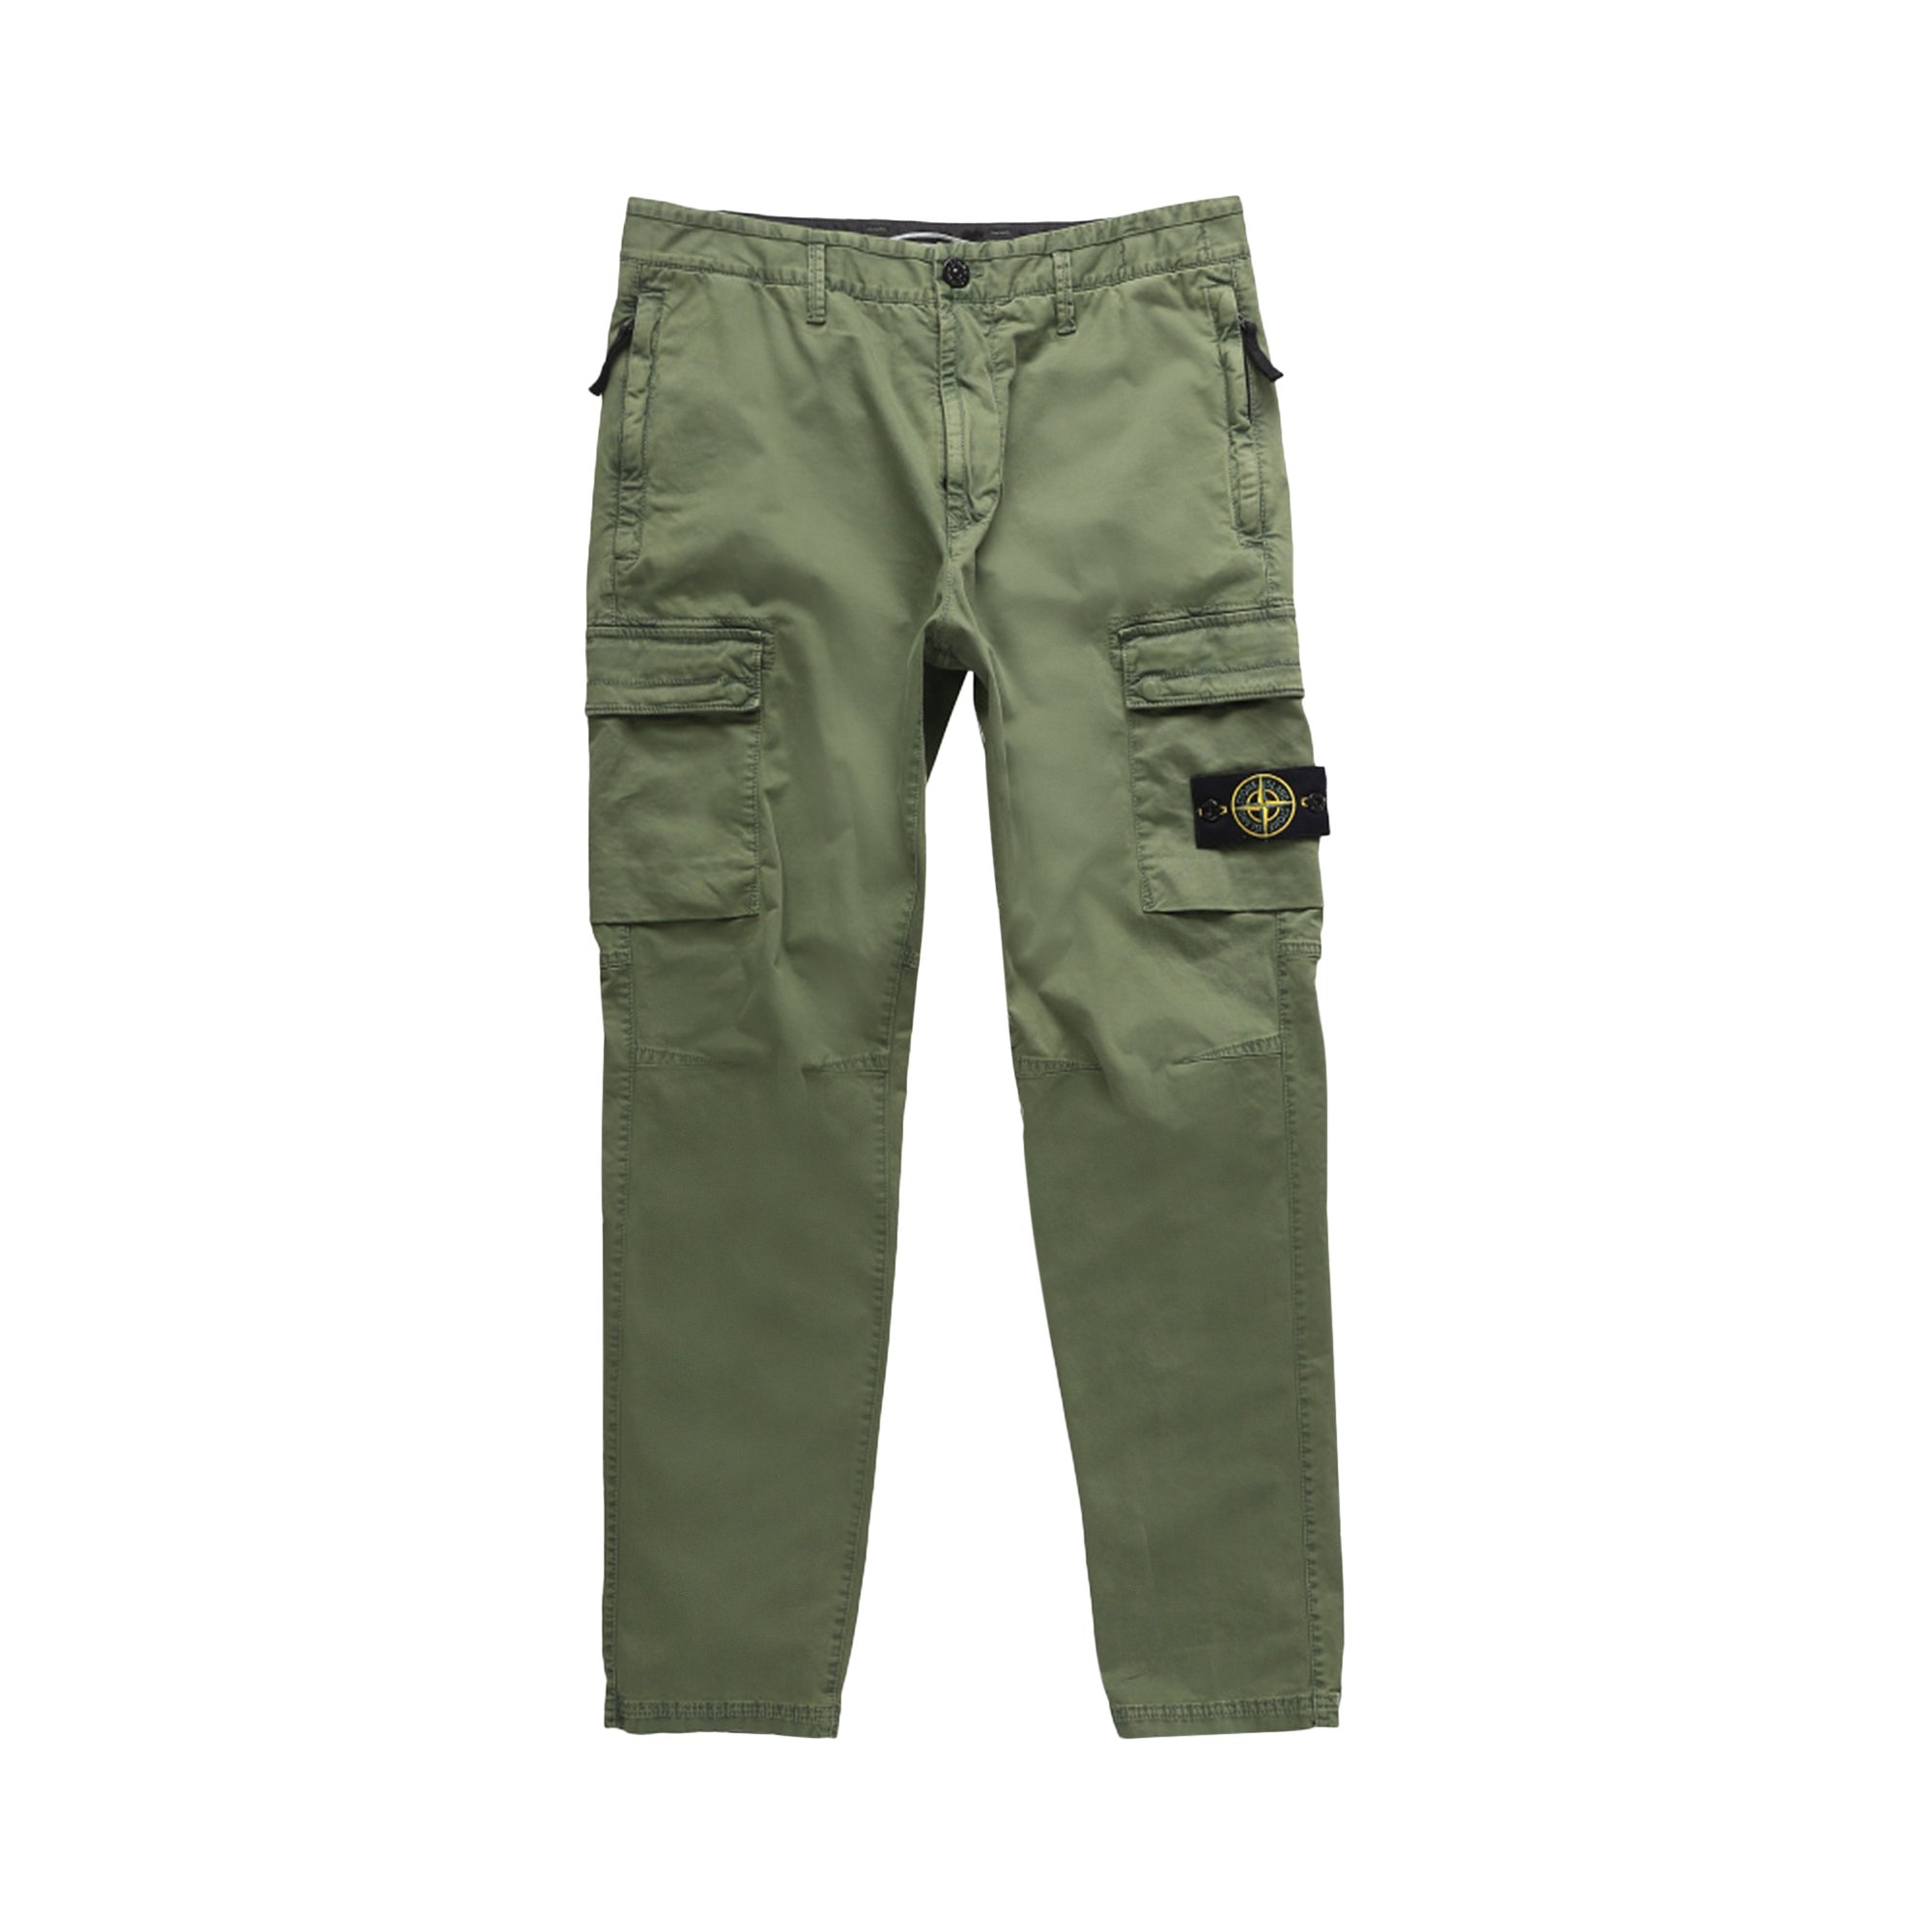 Buy Stone Island Cargo Pants 'Olive' - 761530404 V0158 | GOAT